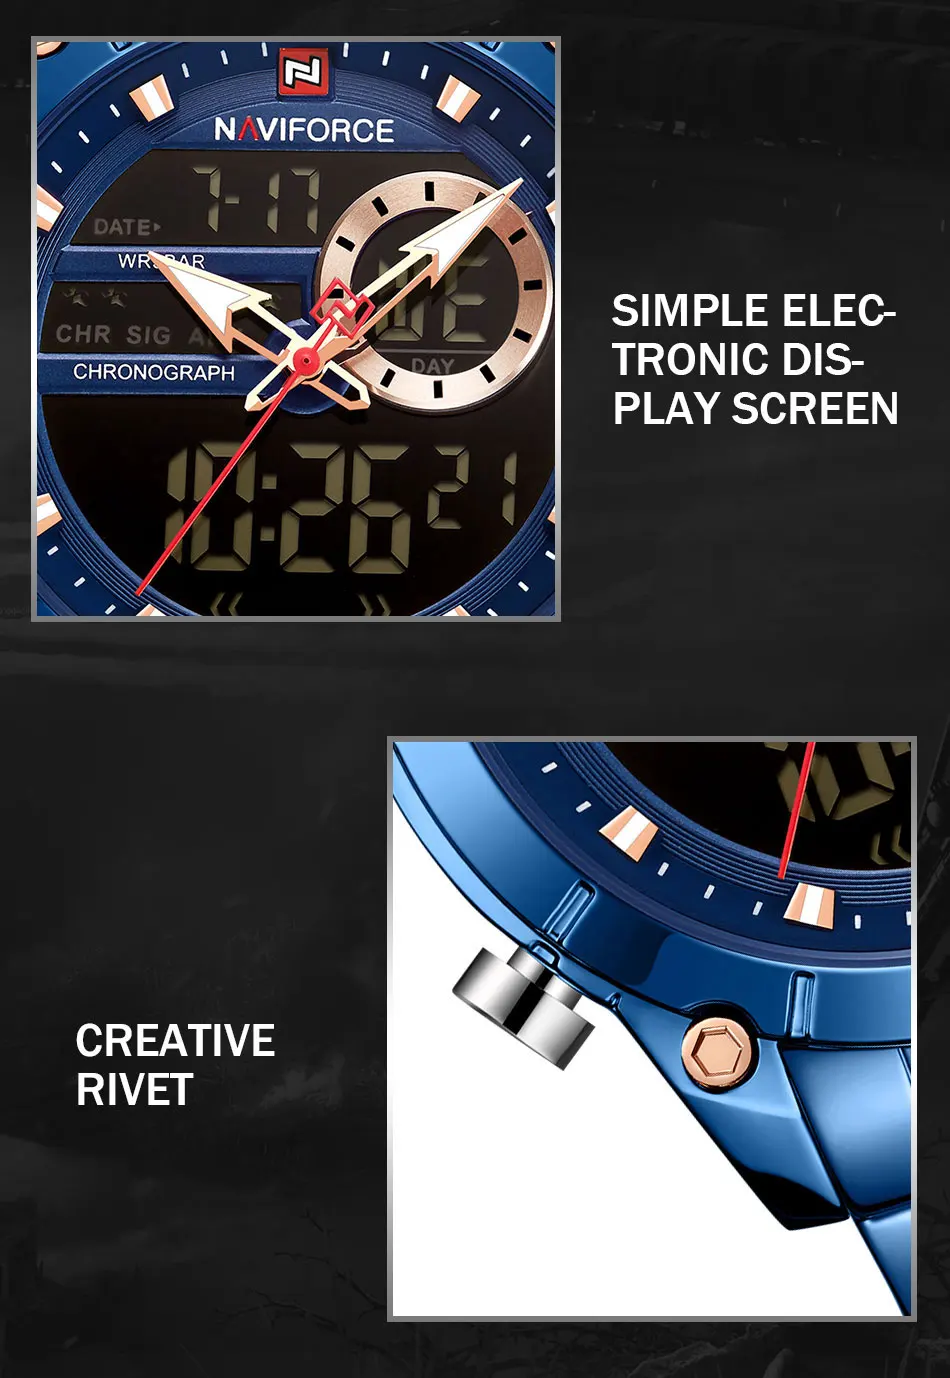 NAVIFORCE мужские часы цифровые спортивные часы Relogio Masculino кварцевые часы ремешок из нержавеющей стали многофункциональные наручные часы для мужчин